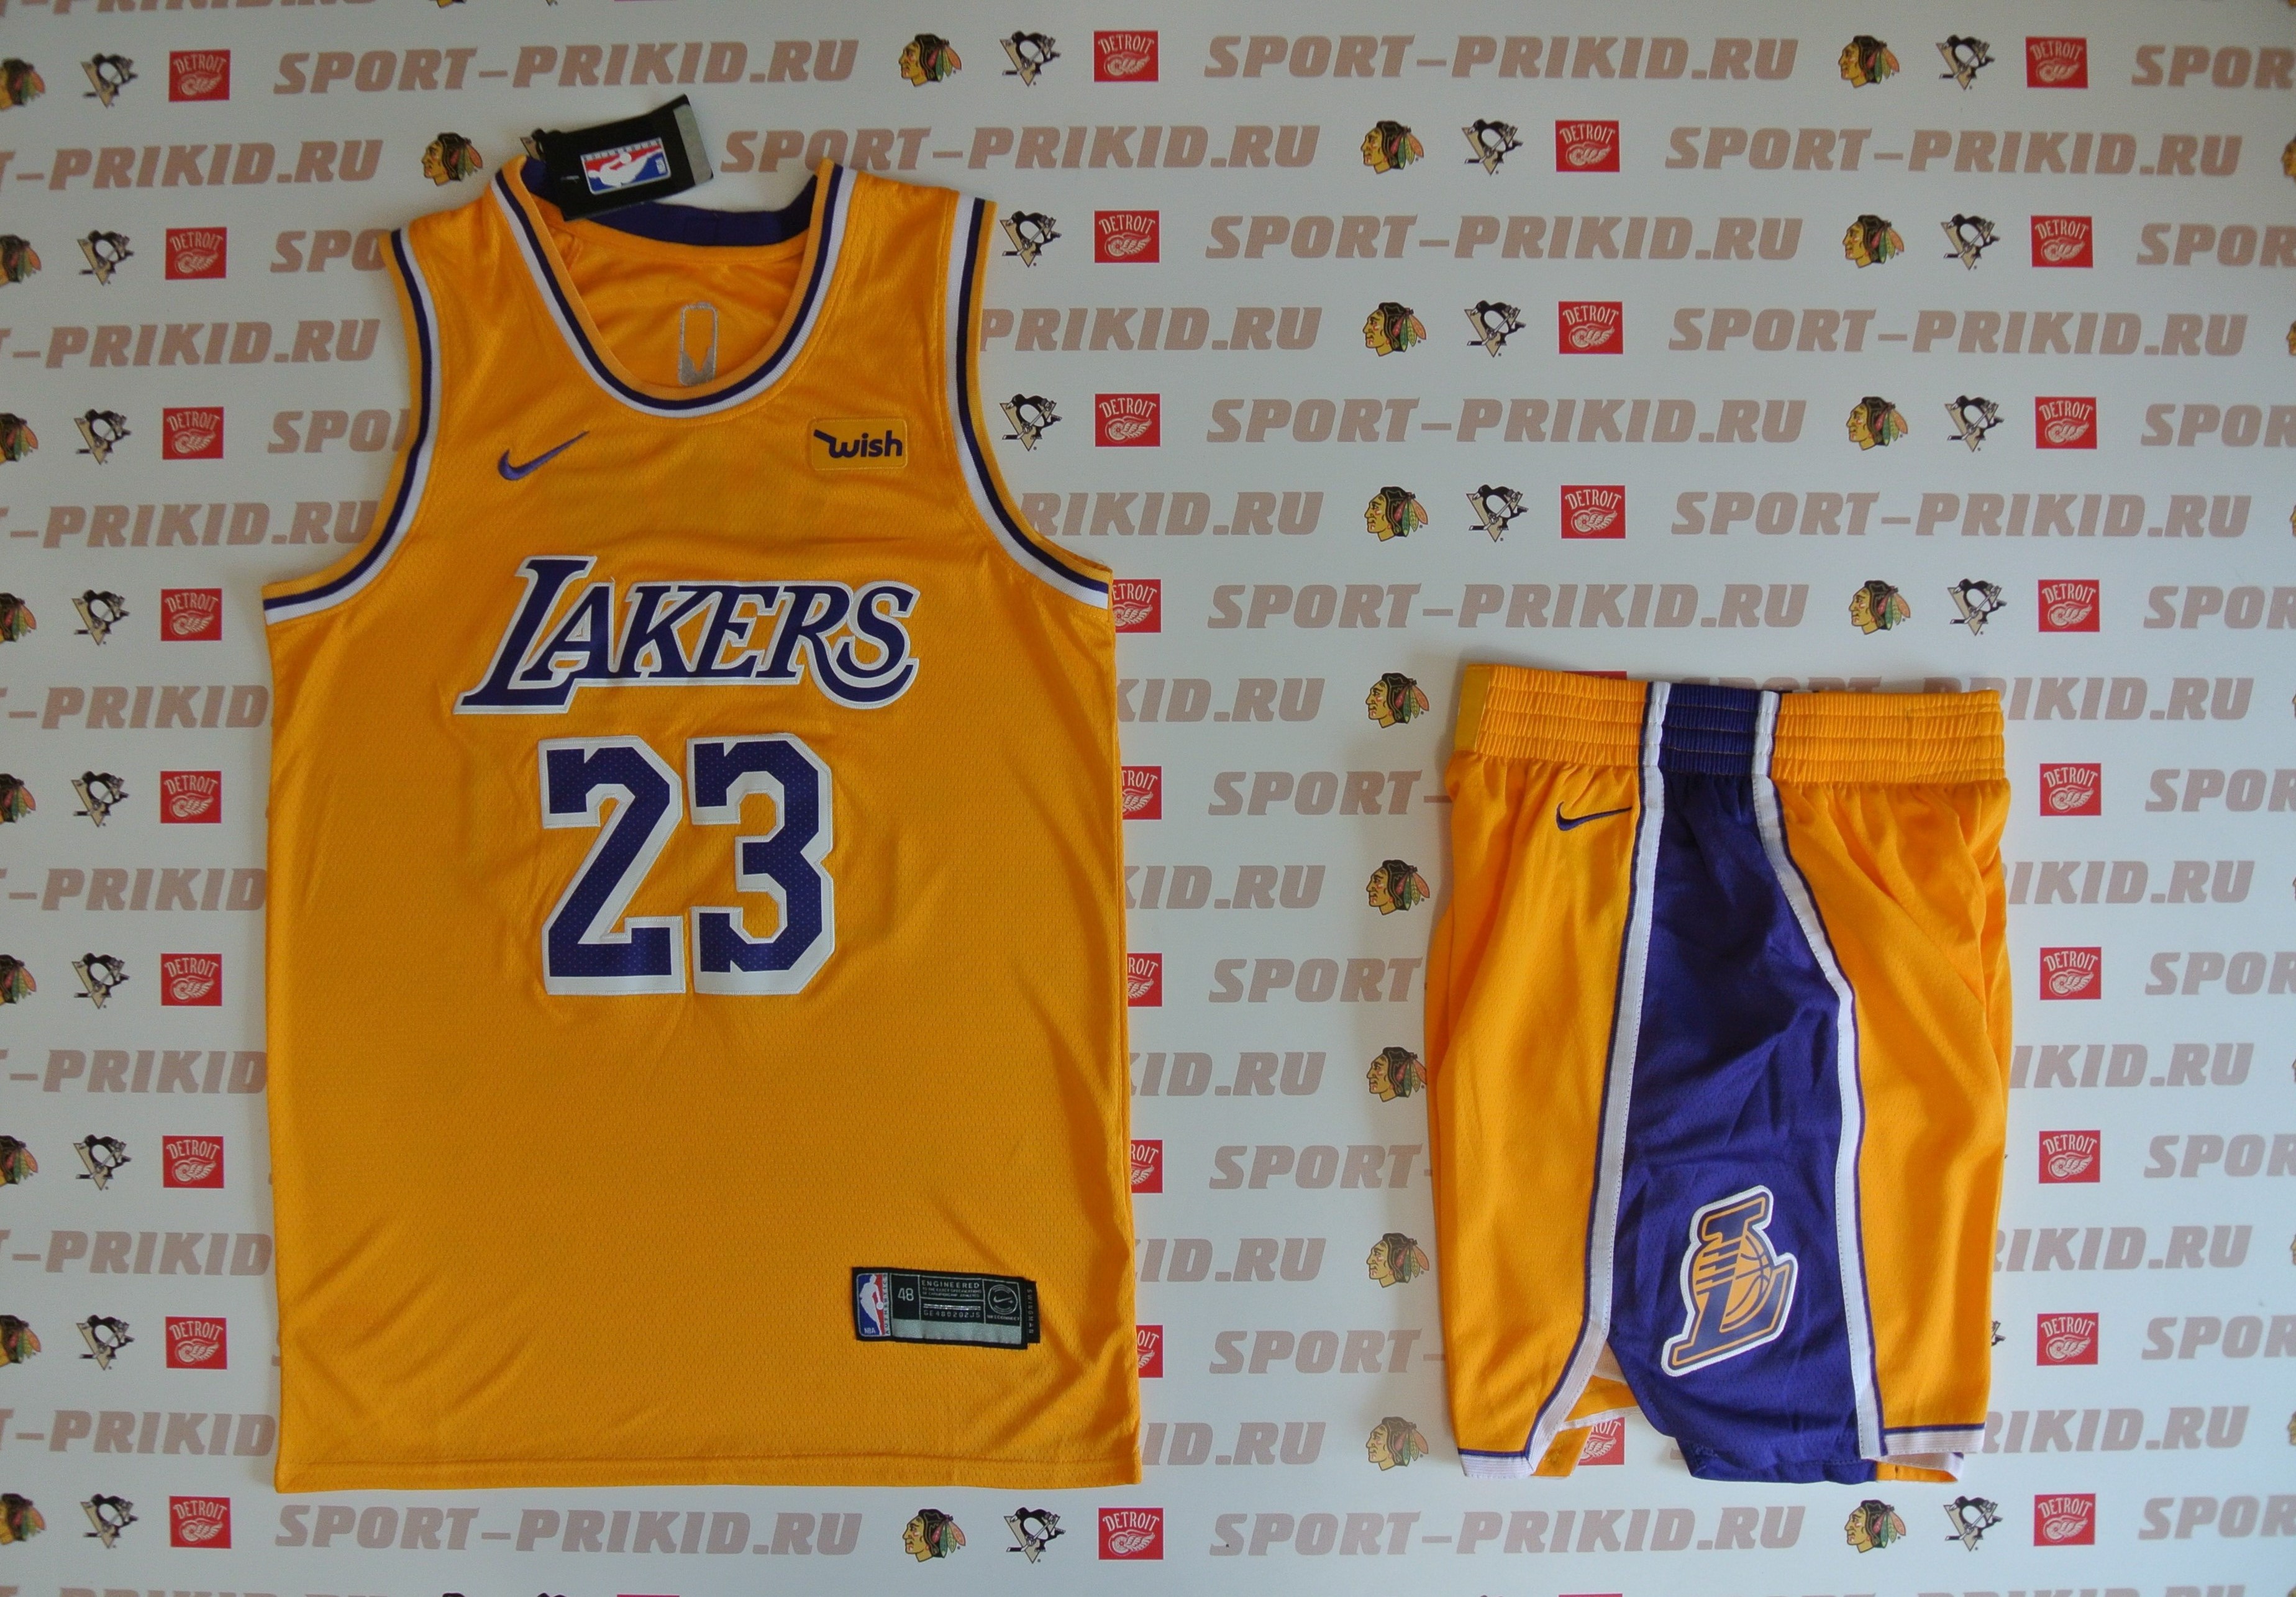 Купить Los Angeles Lakers выгодно